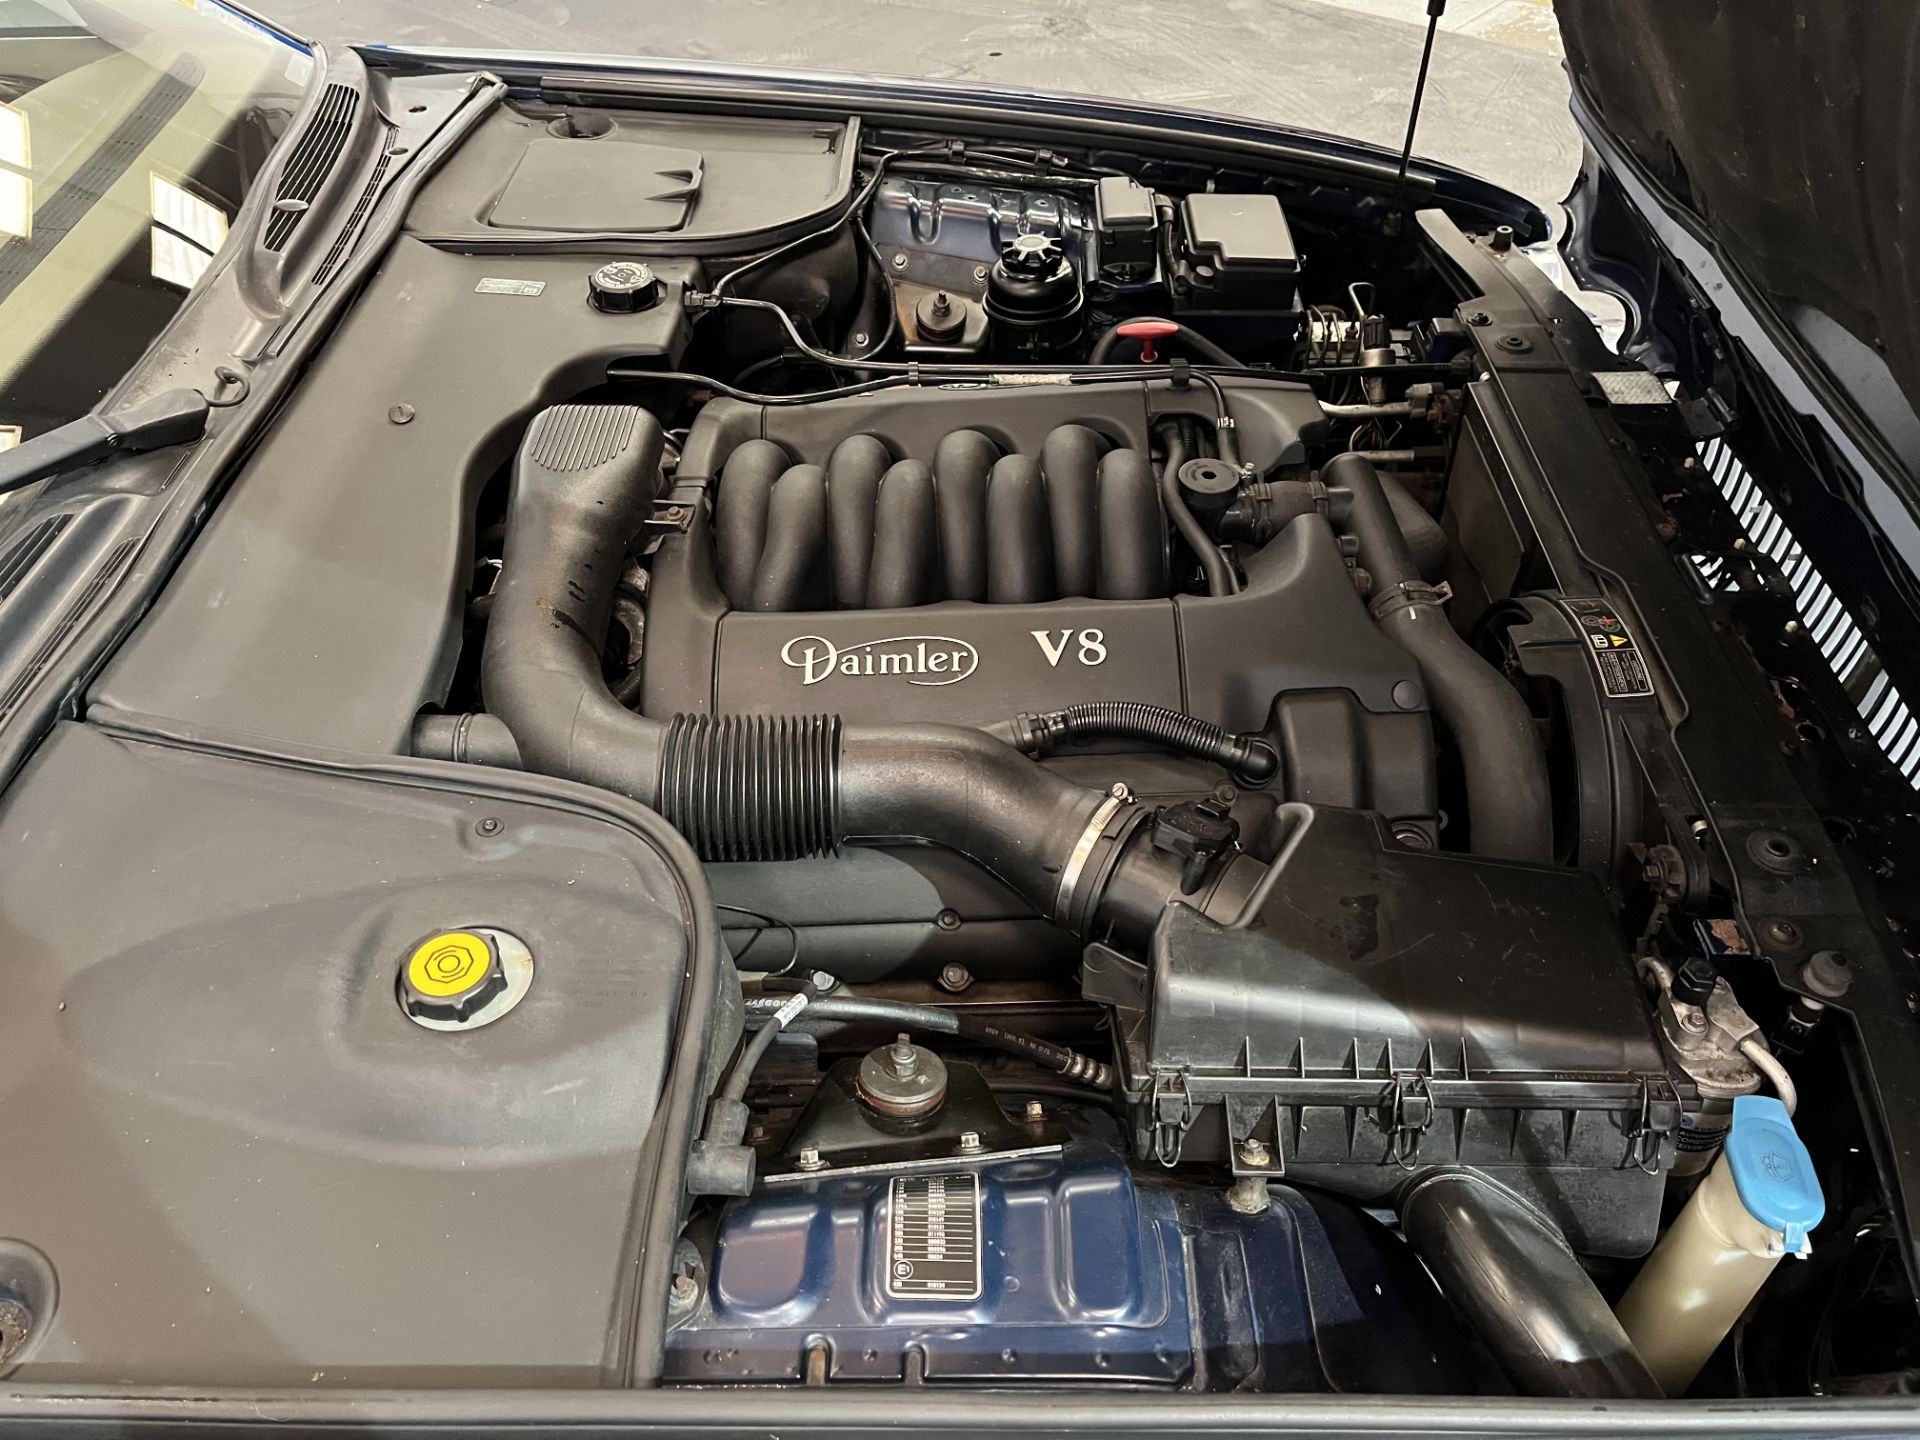 2001 Daimler V8 Auto - 3996cc - Image 15 of 21